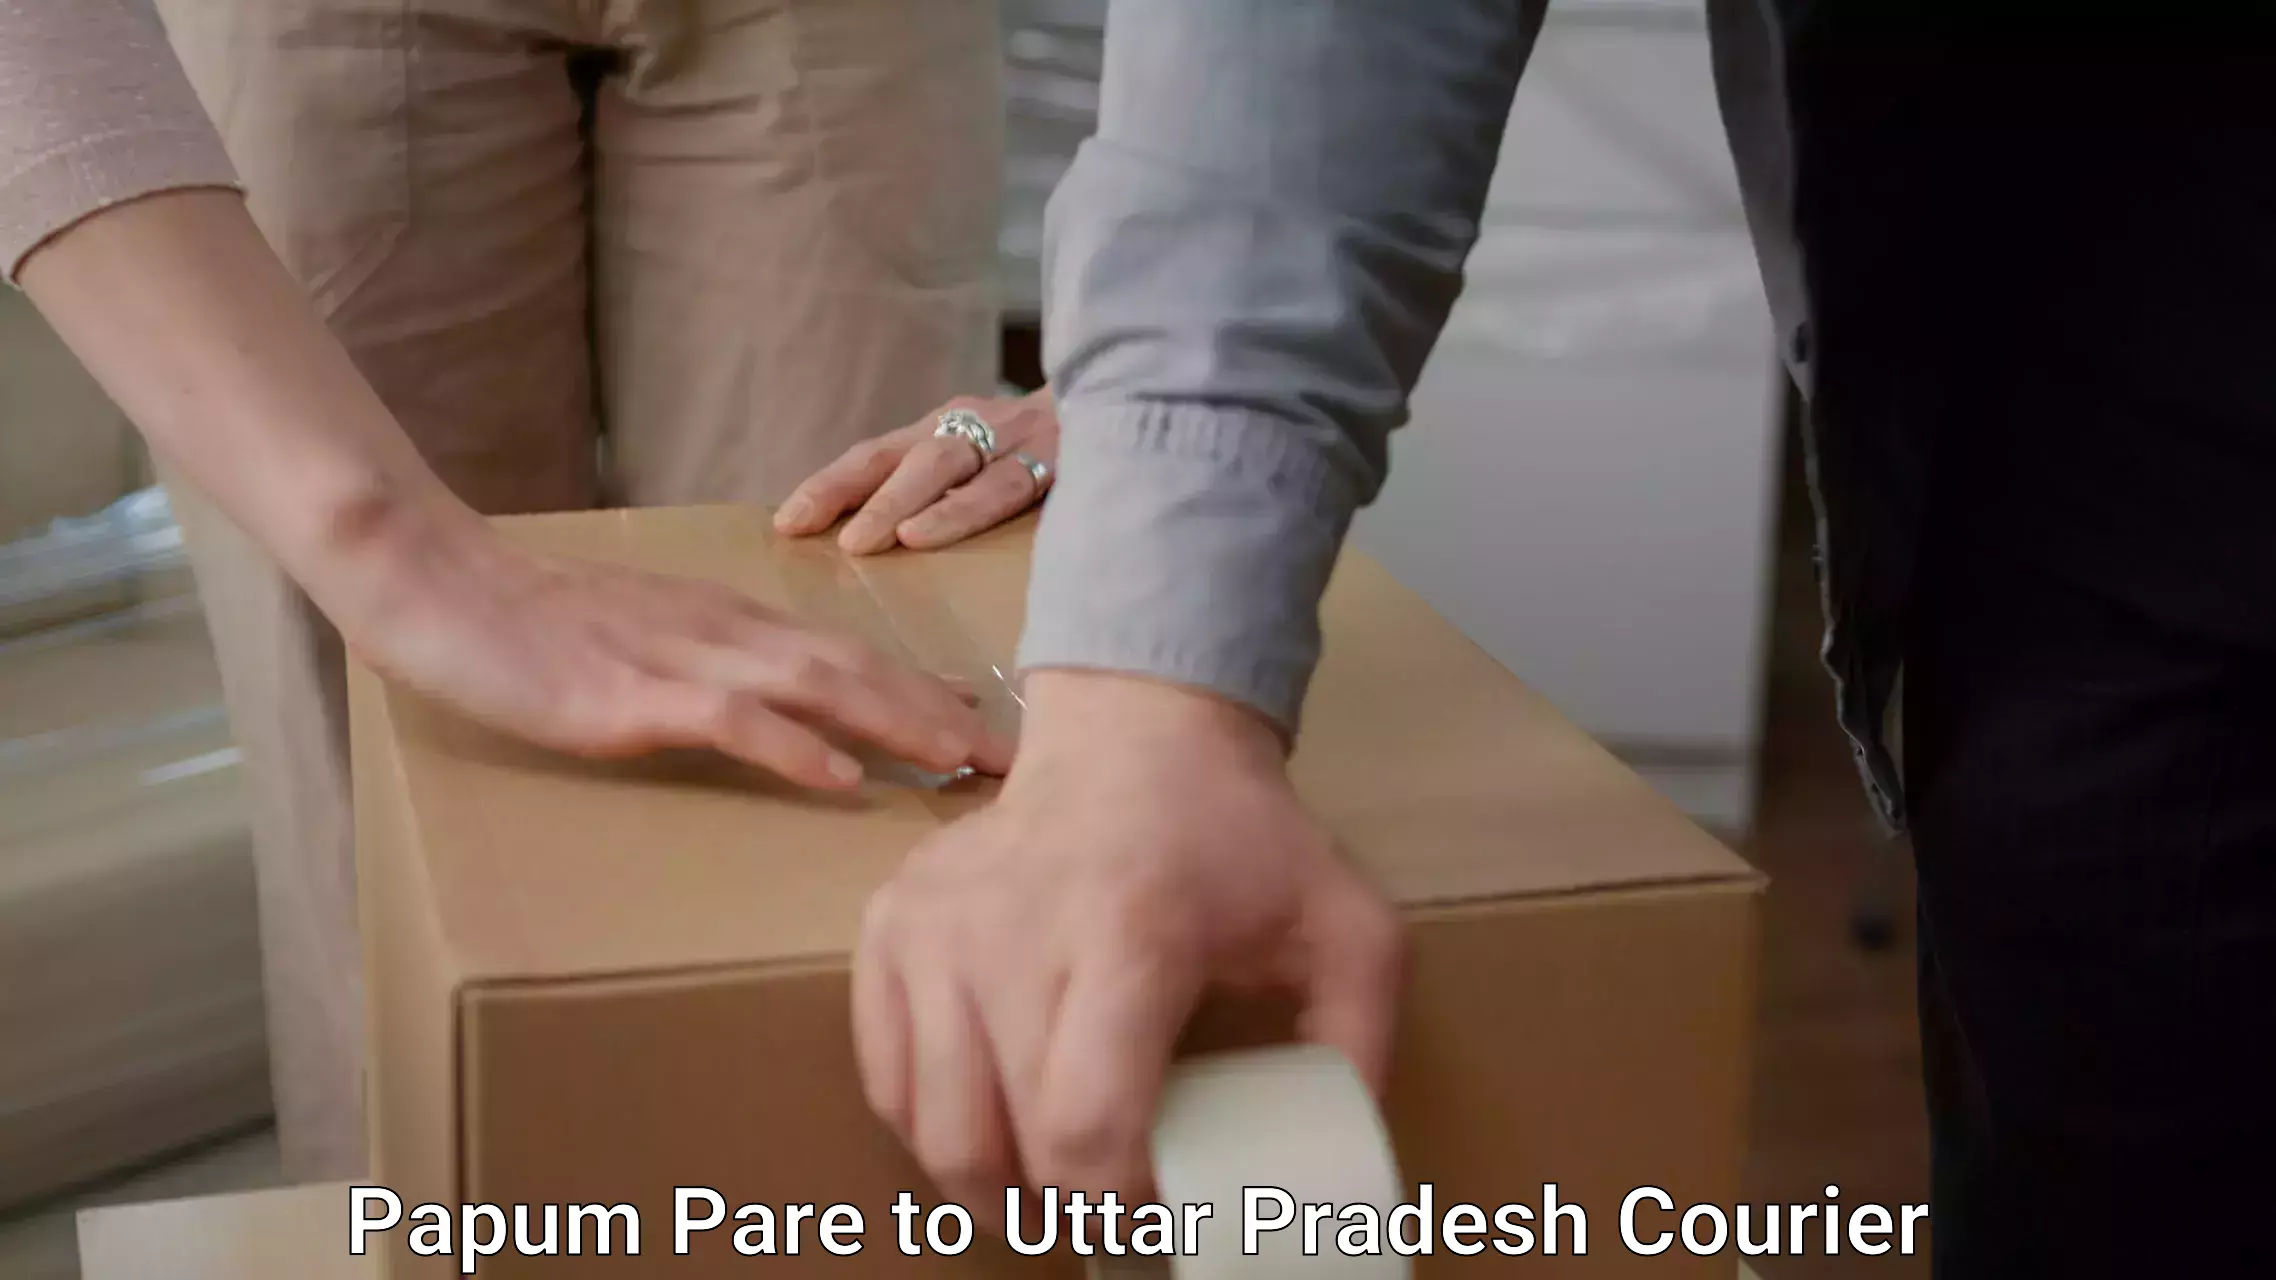 Furniture transport professionals Papum Pare to Tulsipur